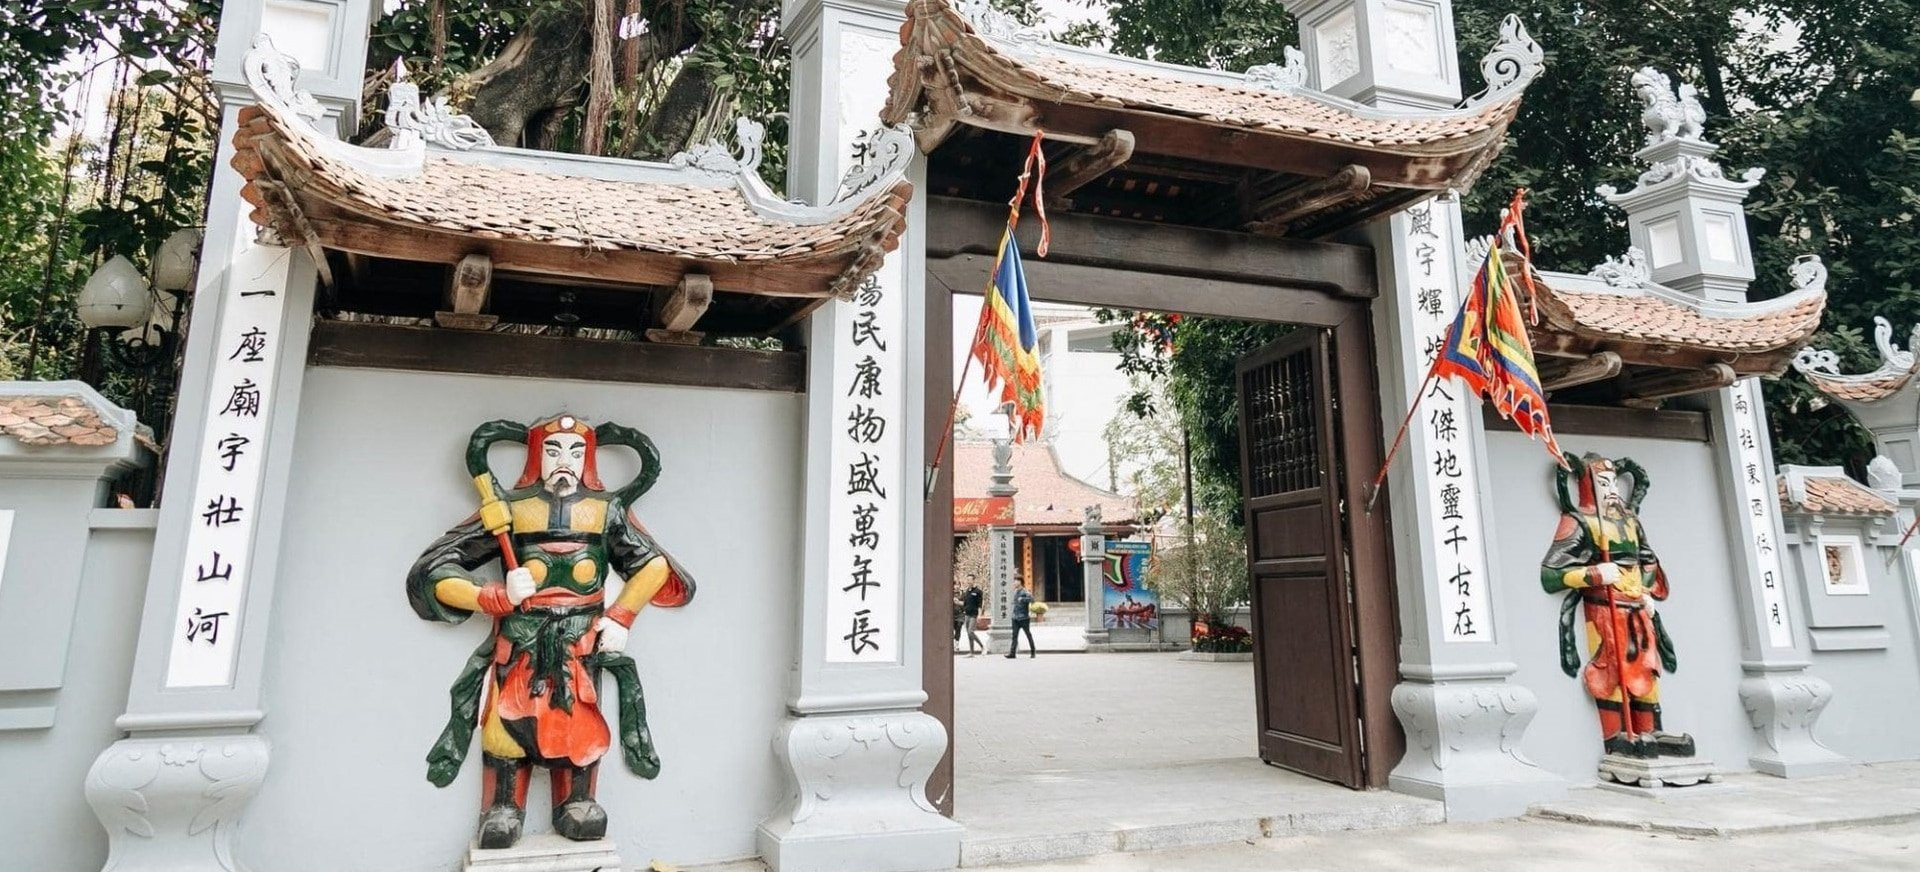 Chùa Hà: Địa điểm cầu duyên nổi tiếng tại Hà Nội